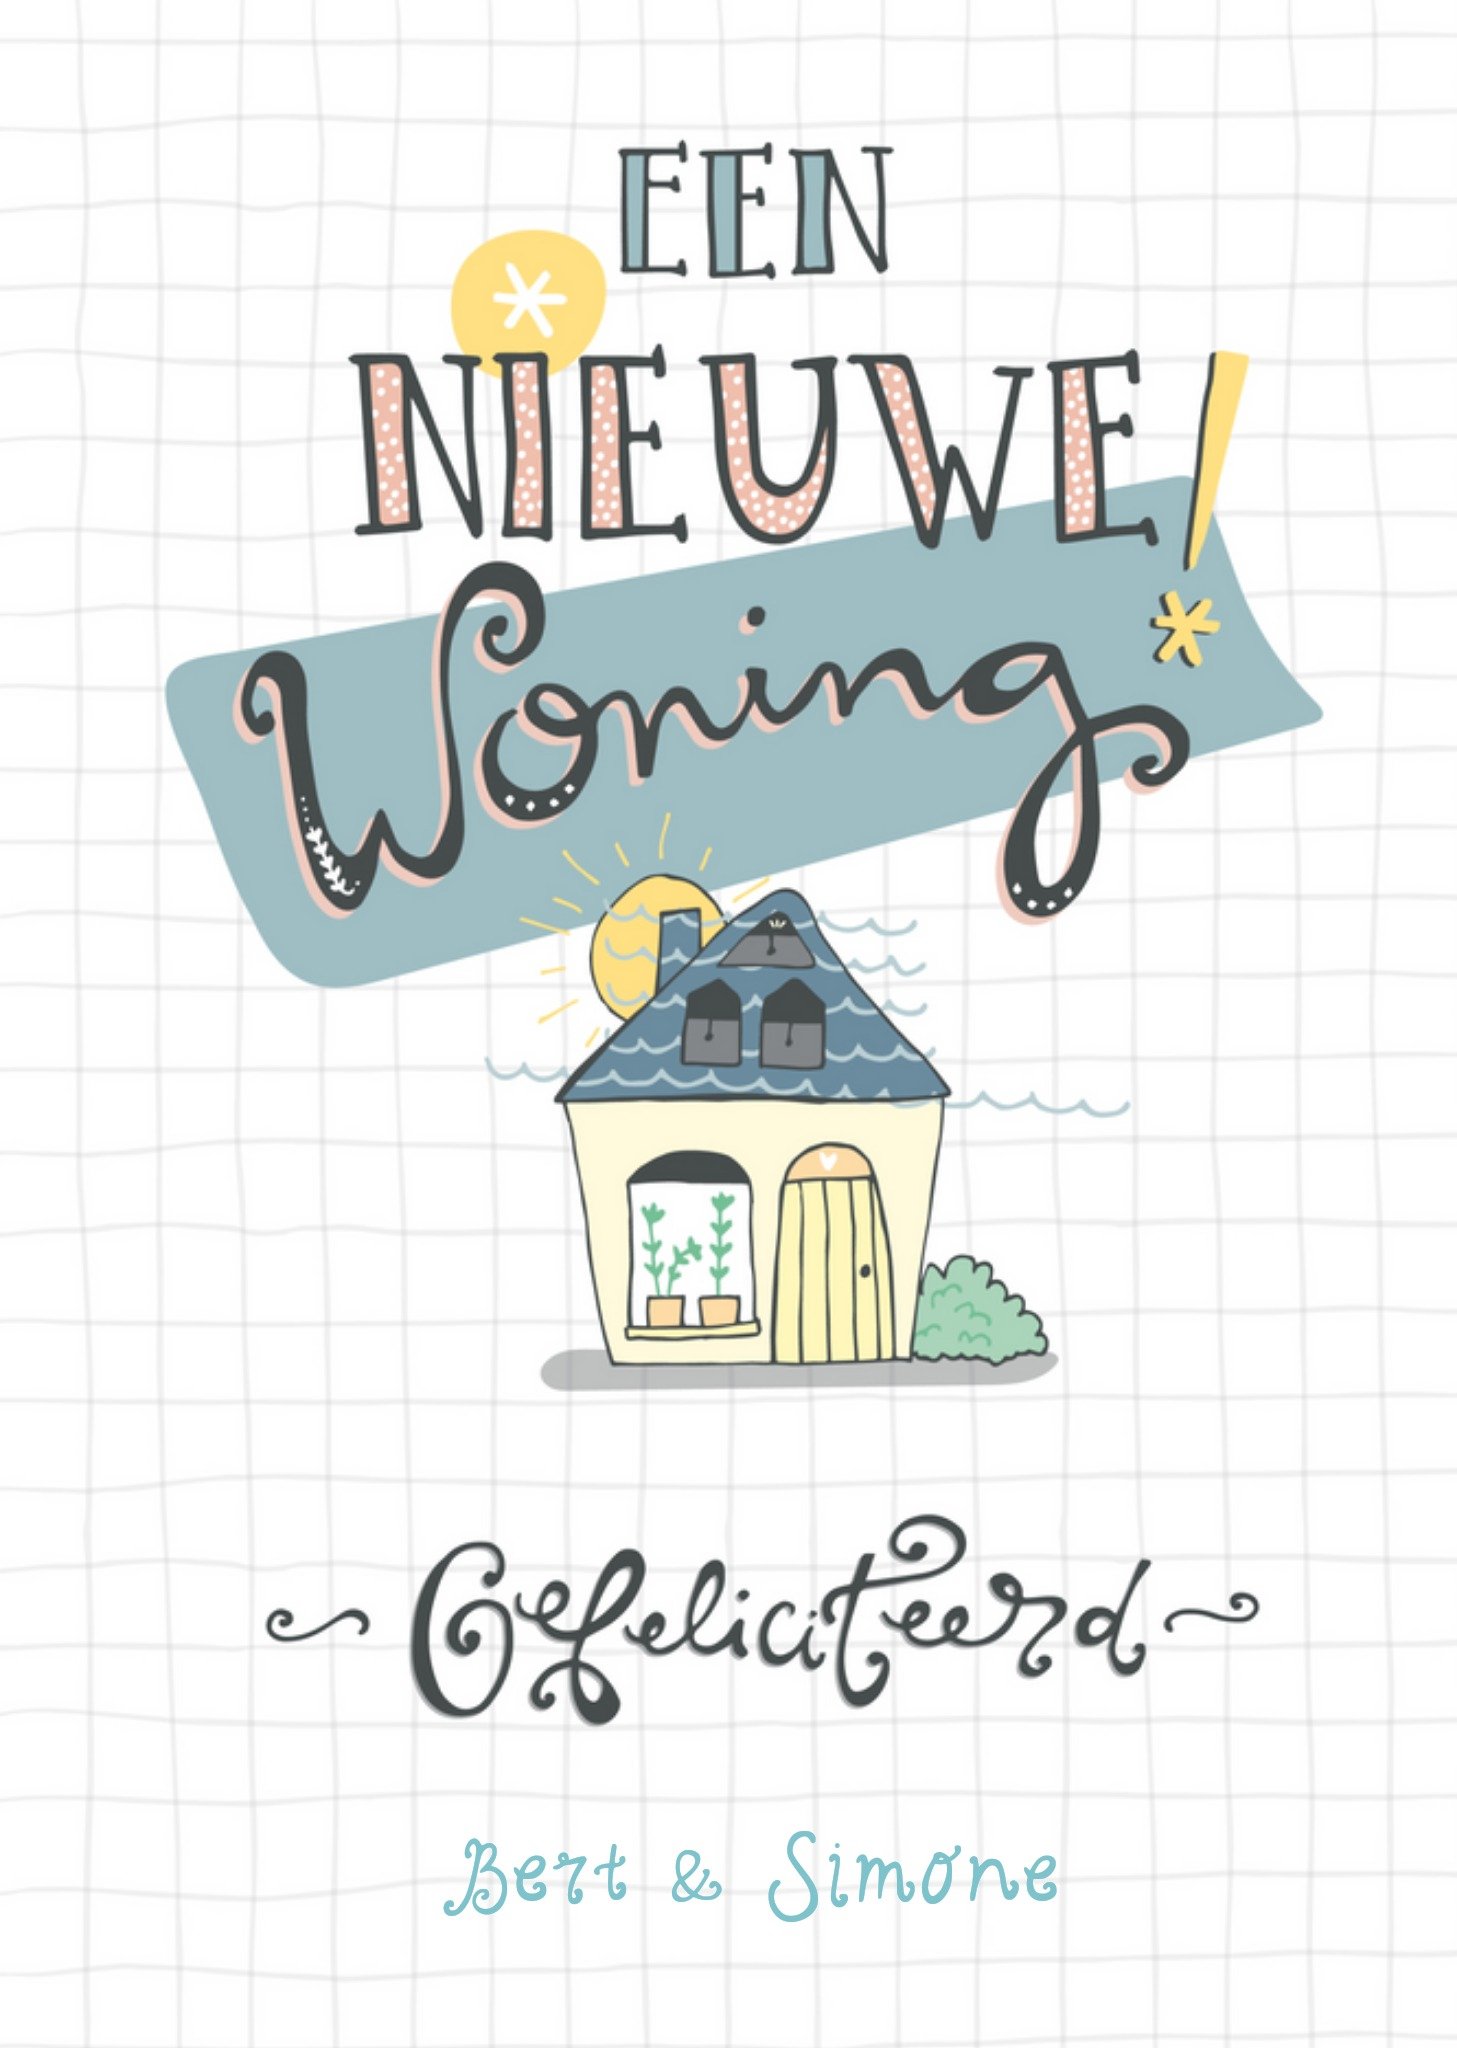 Funny Side Up - Nieuwe woning kaart - Met namen